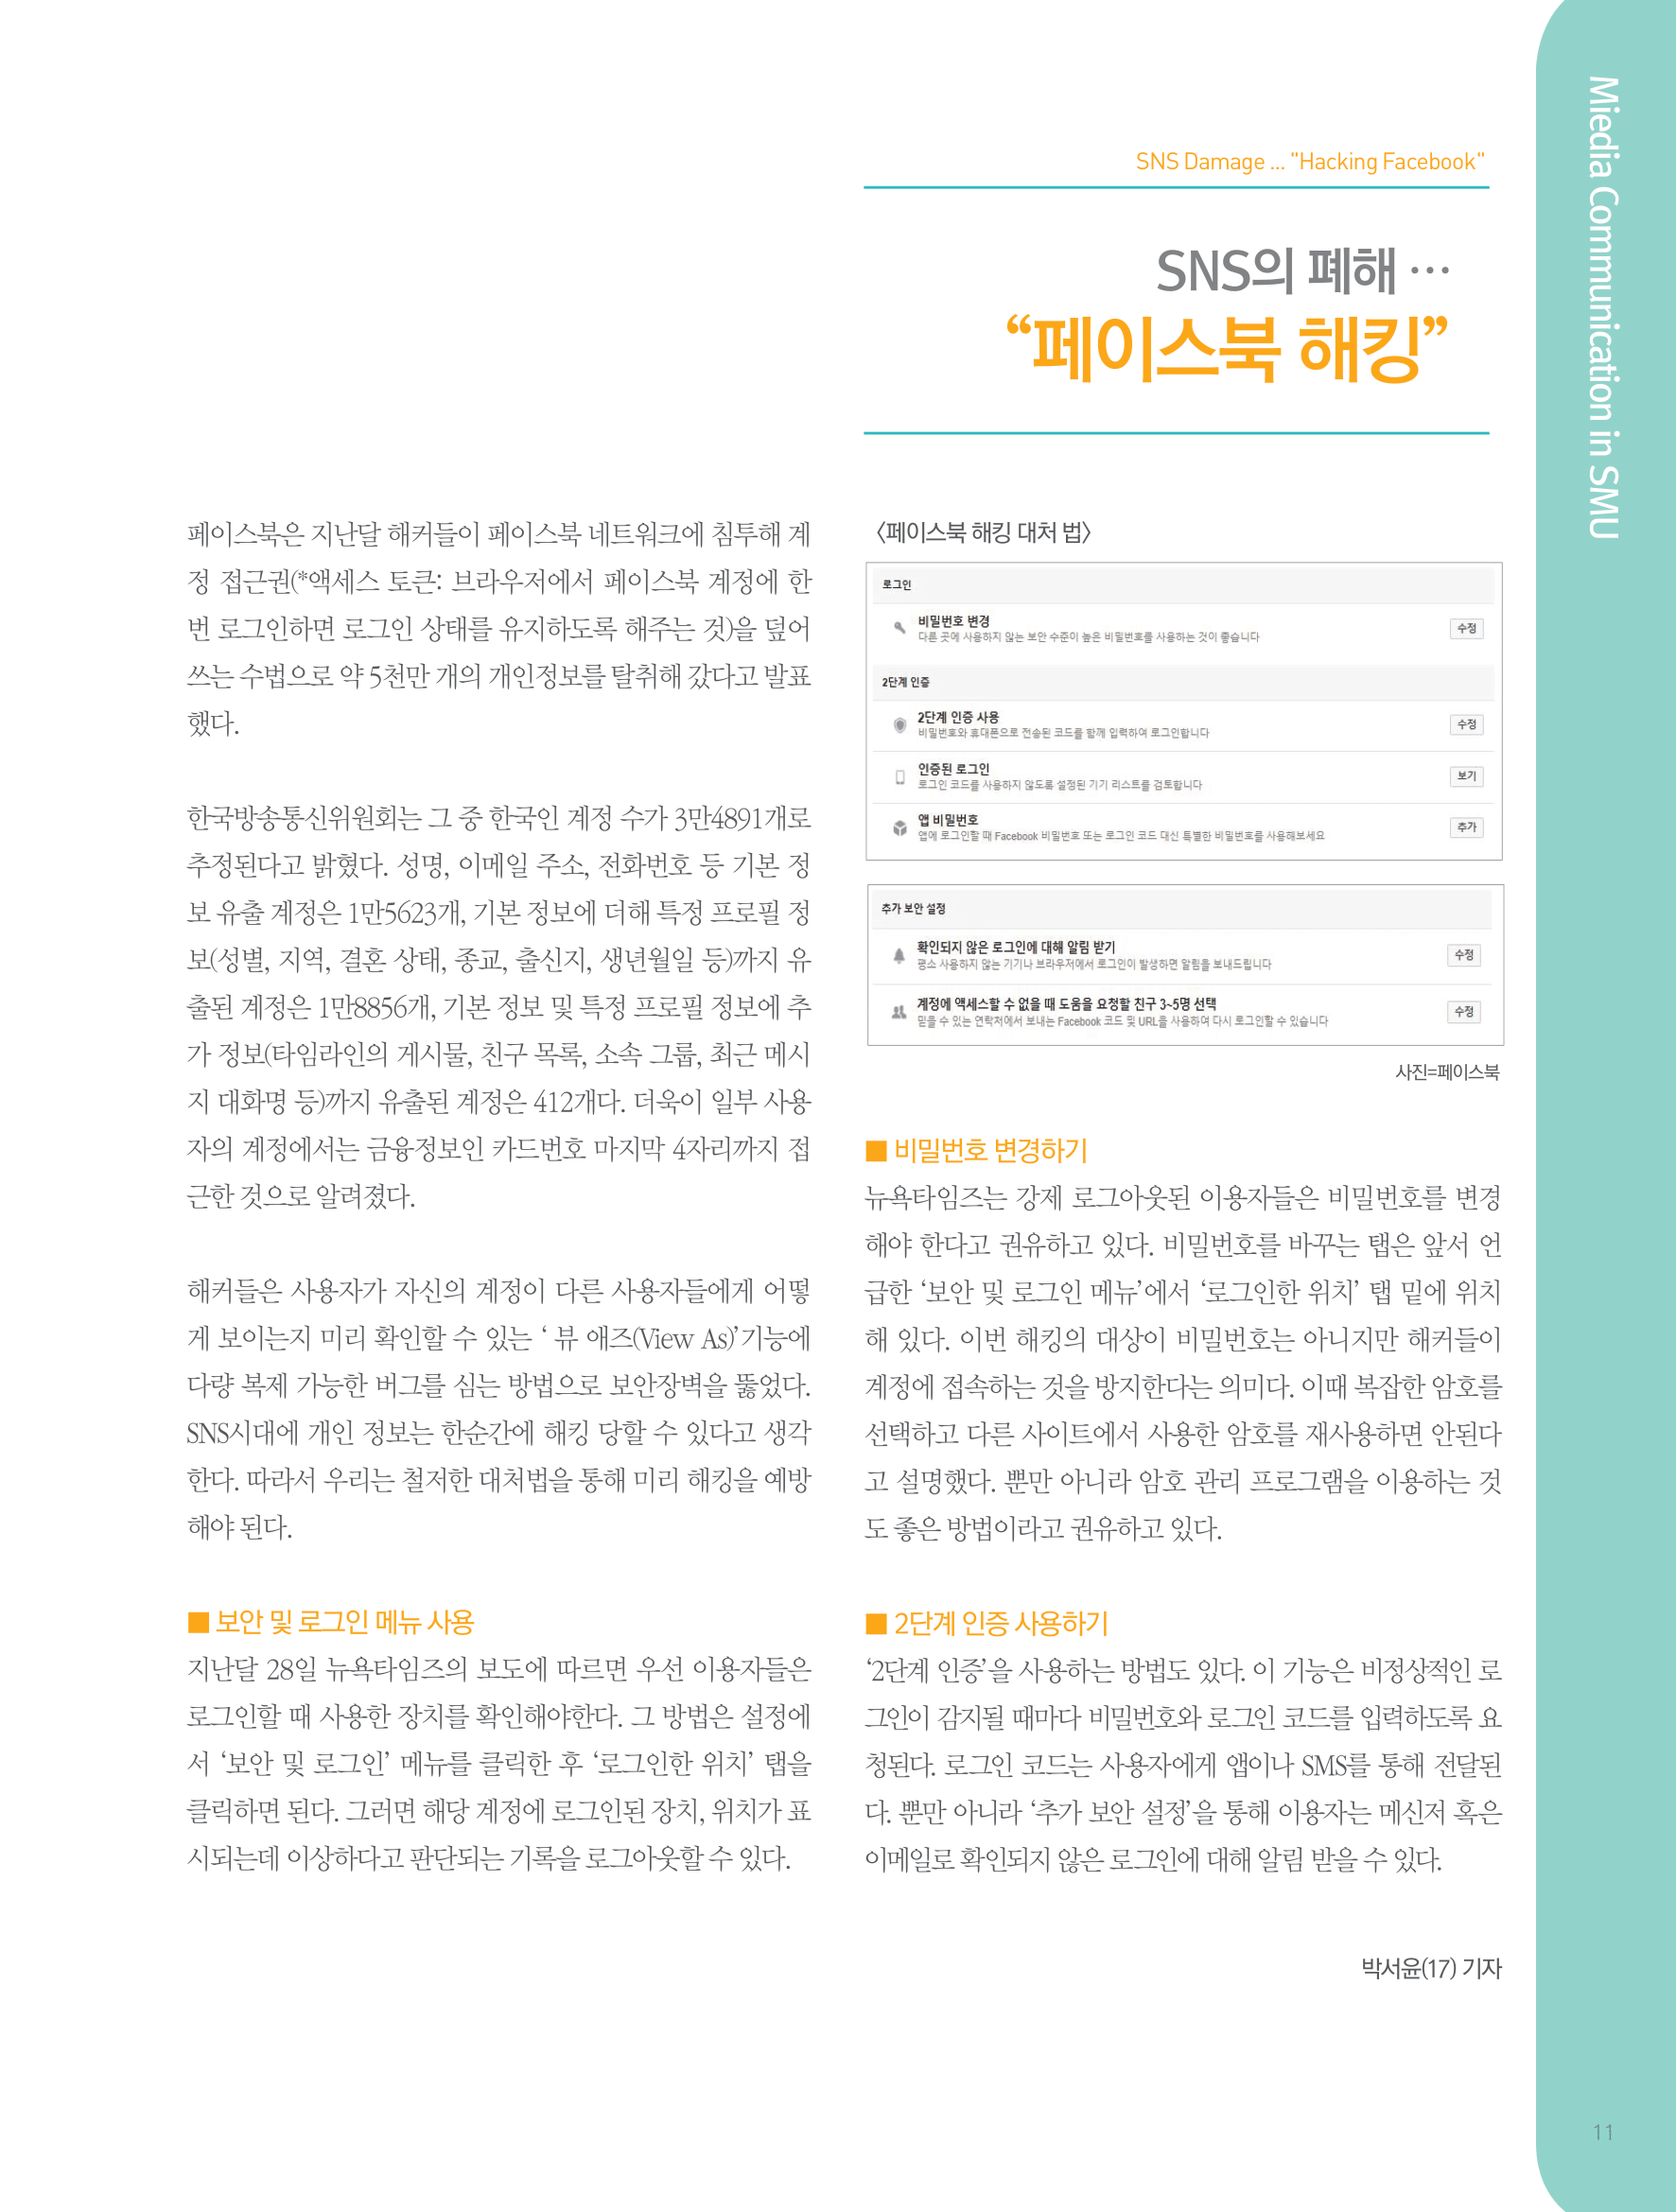 뜻새김 신문 72호 11